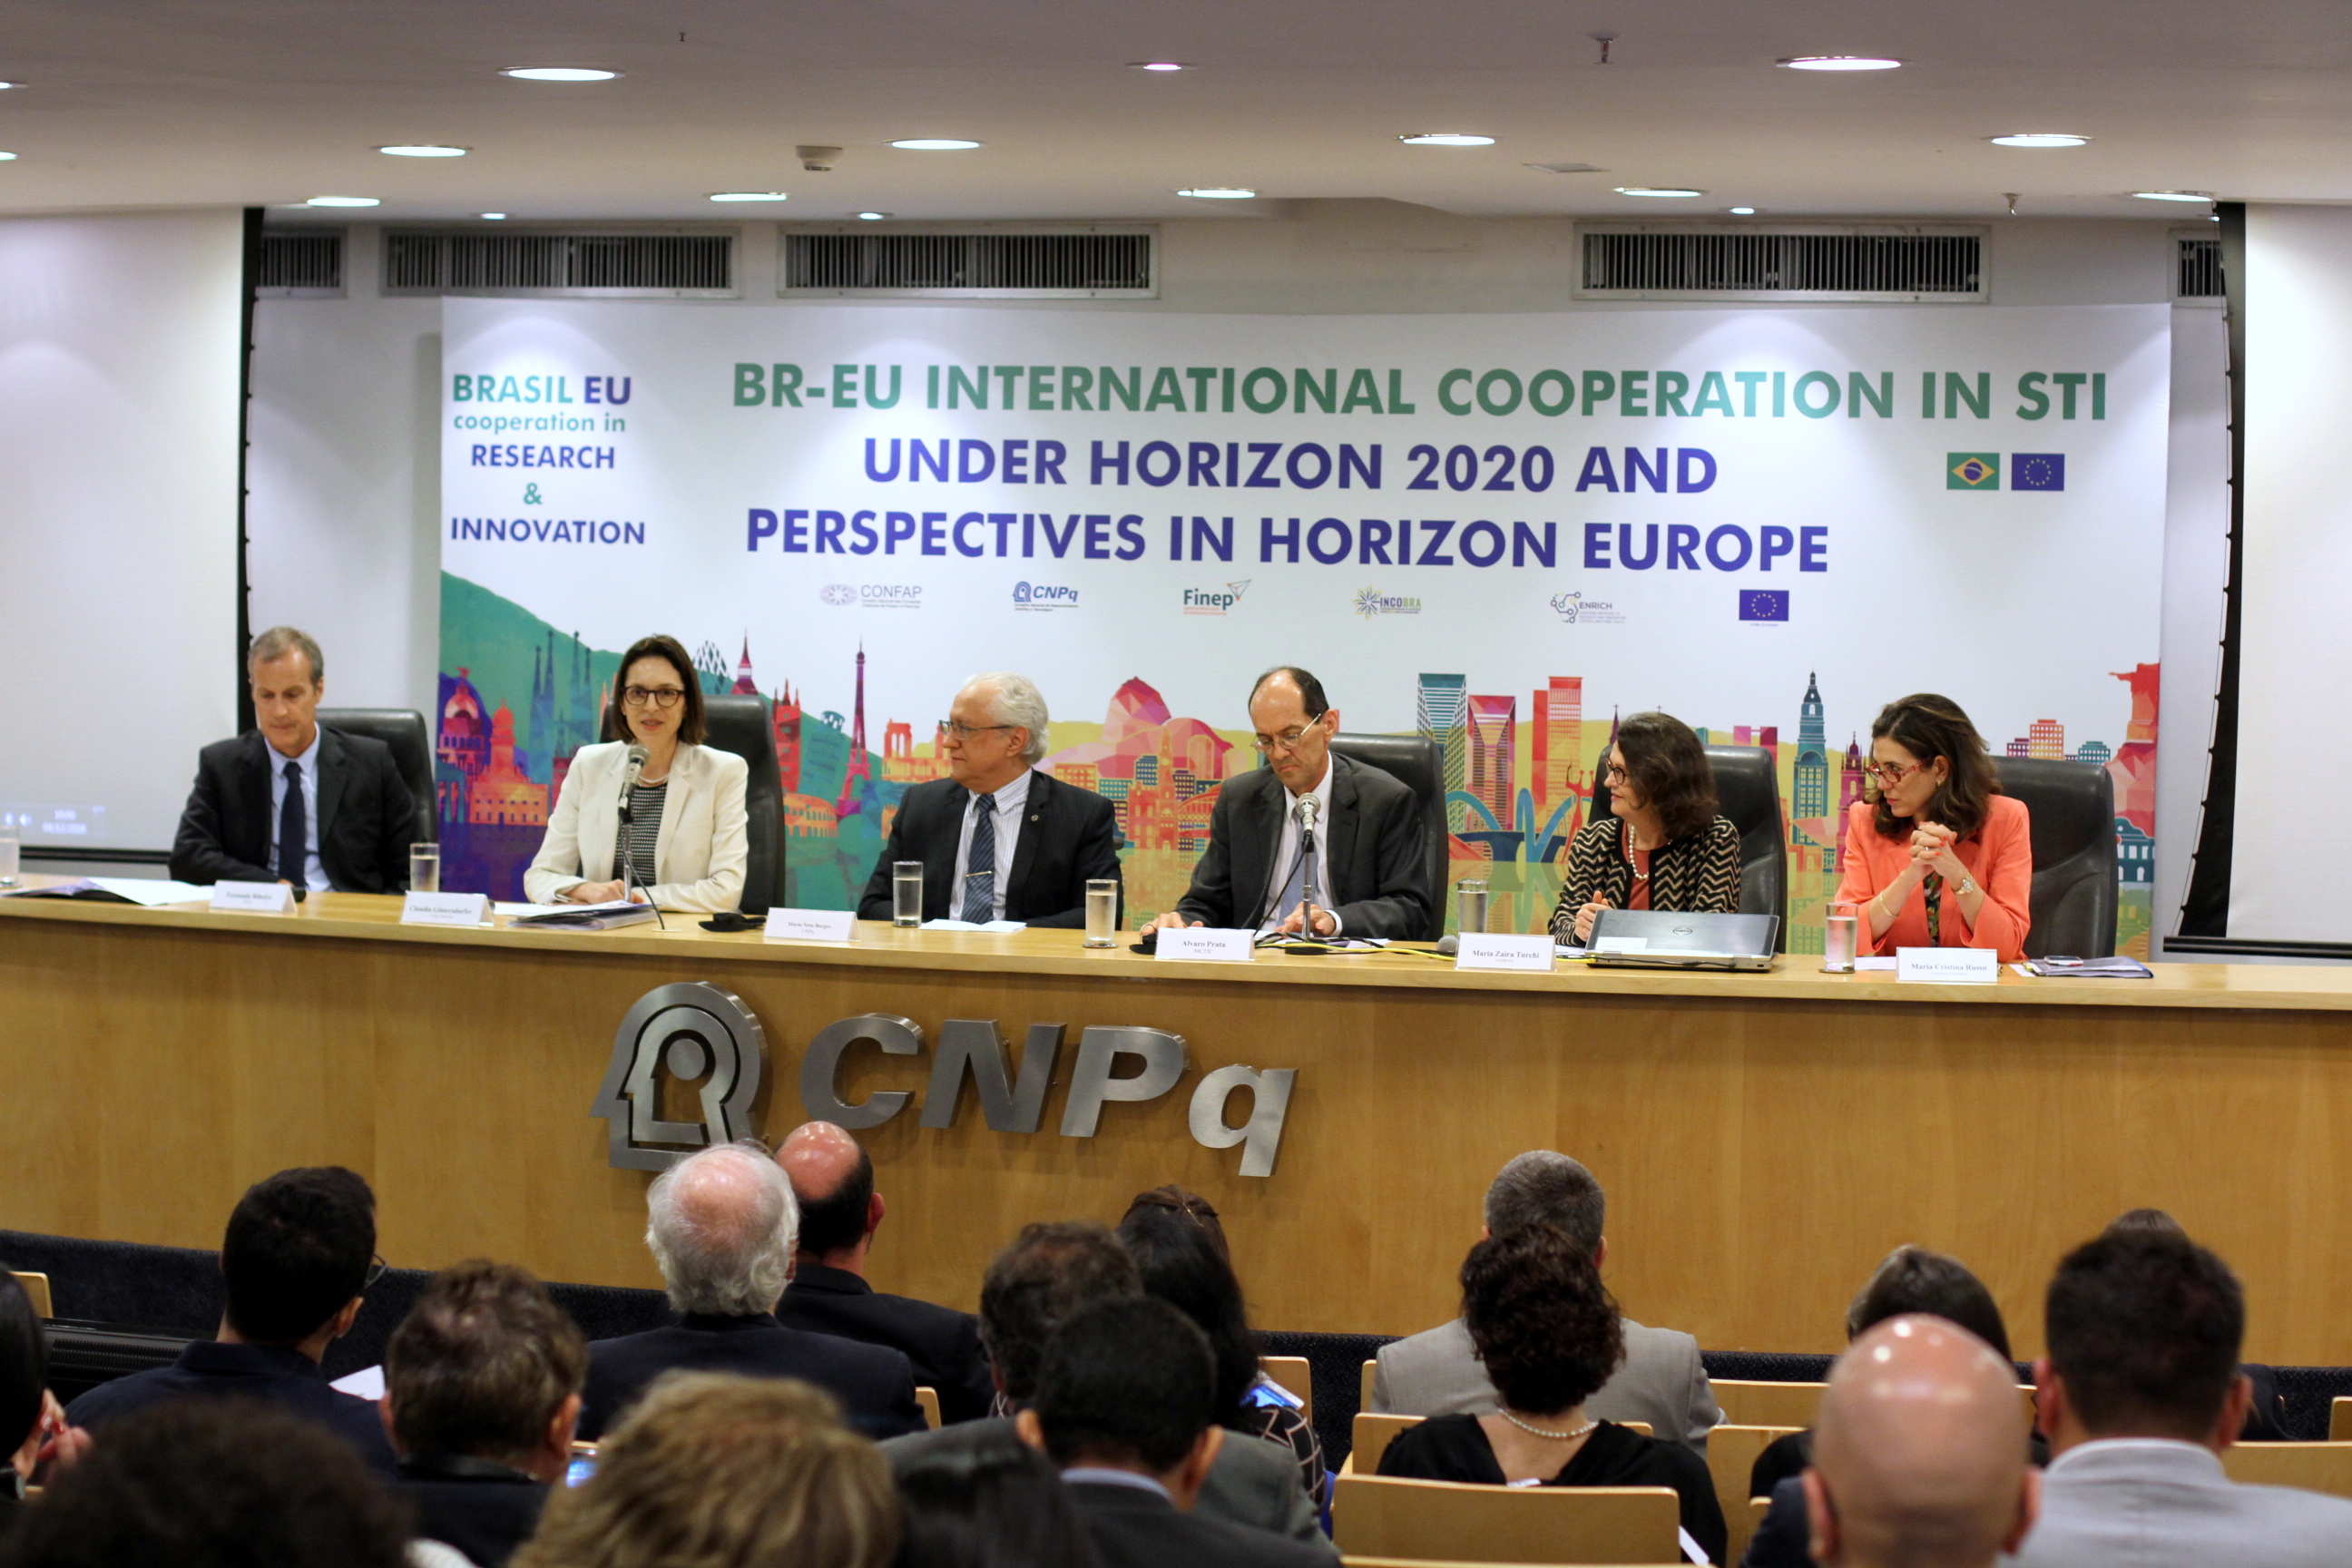  Cooperação Brasil-União Europeia em Ciência, Tecnologia e Inovação no Contexto do Horizon 2020 e Perspectivas no Horizon Europe - Foto Marcelo Gondim